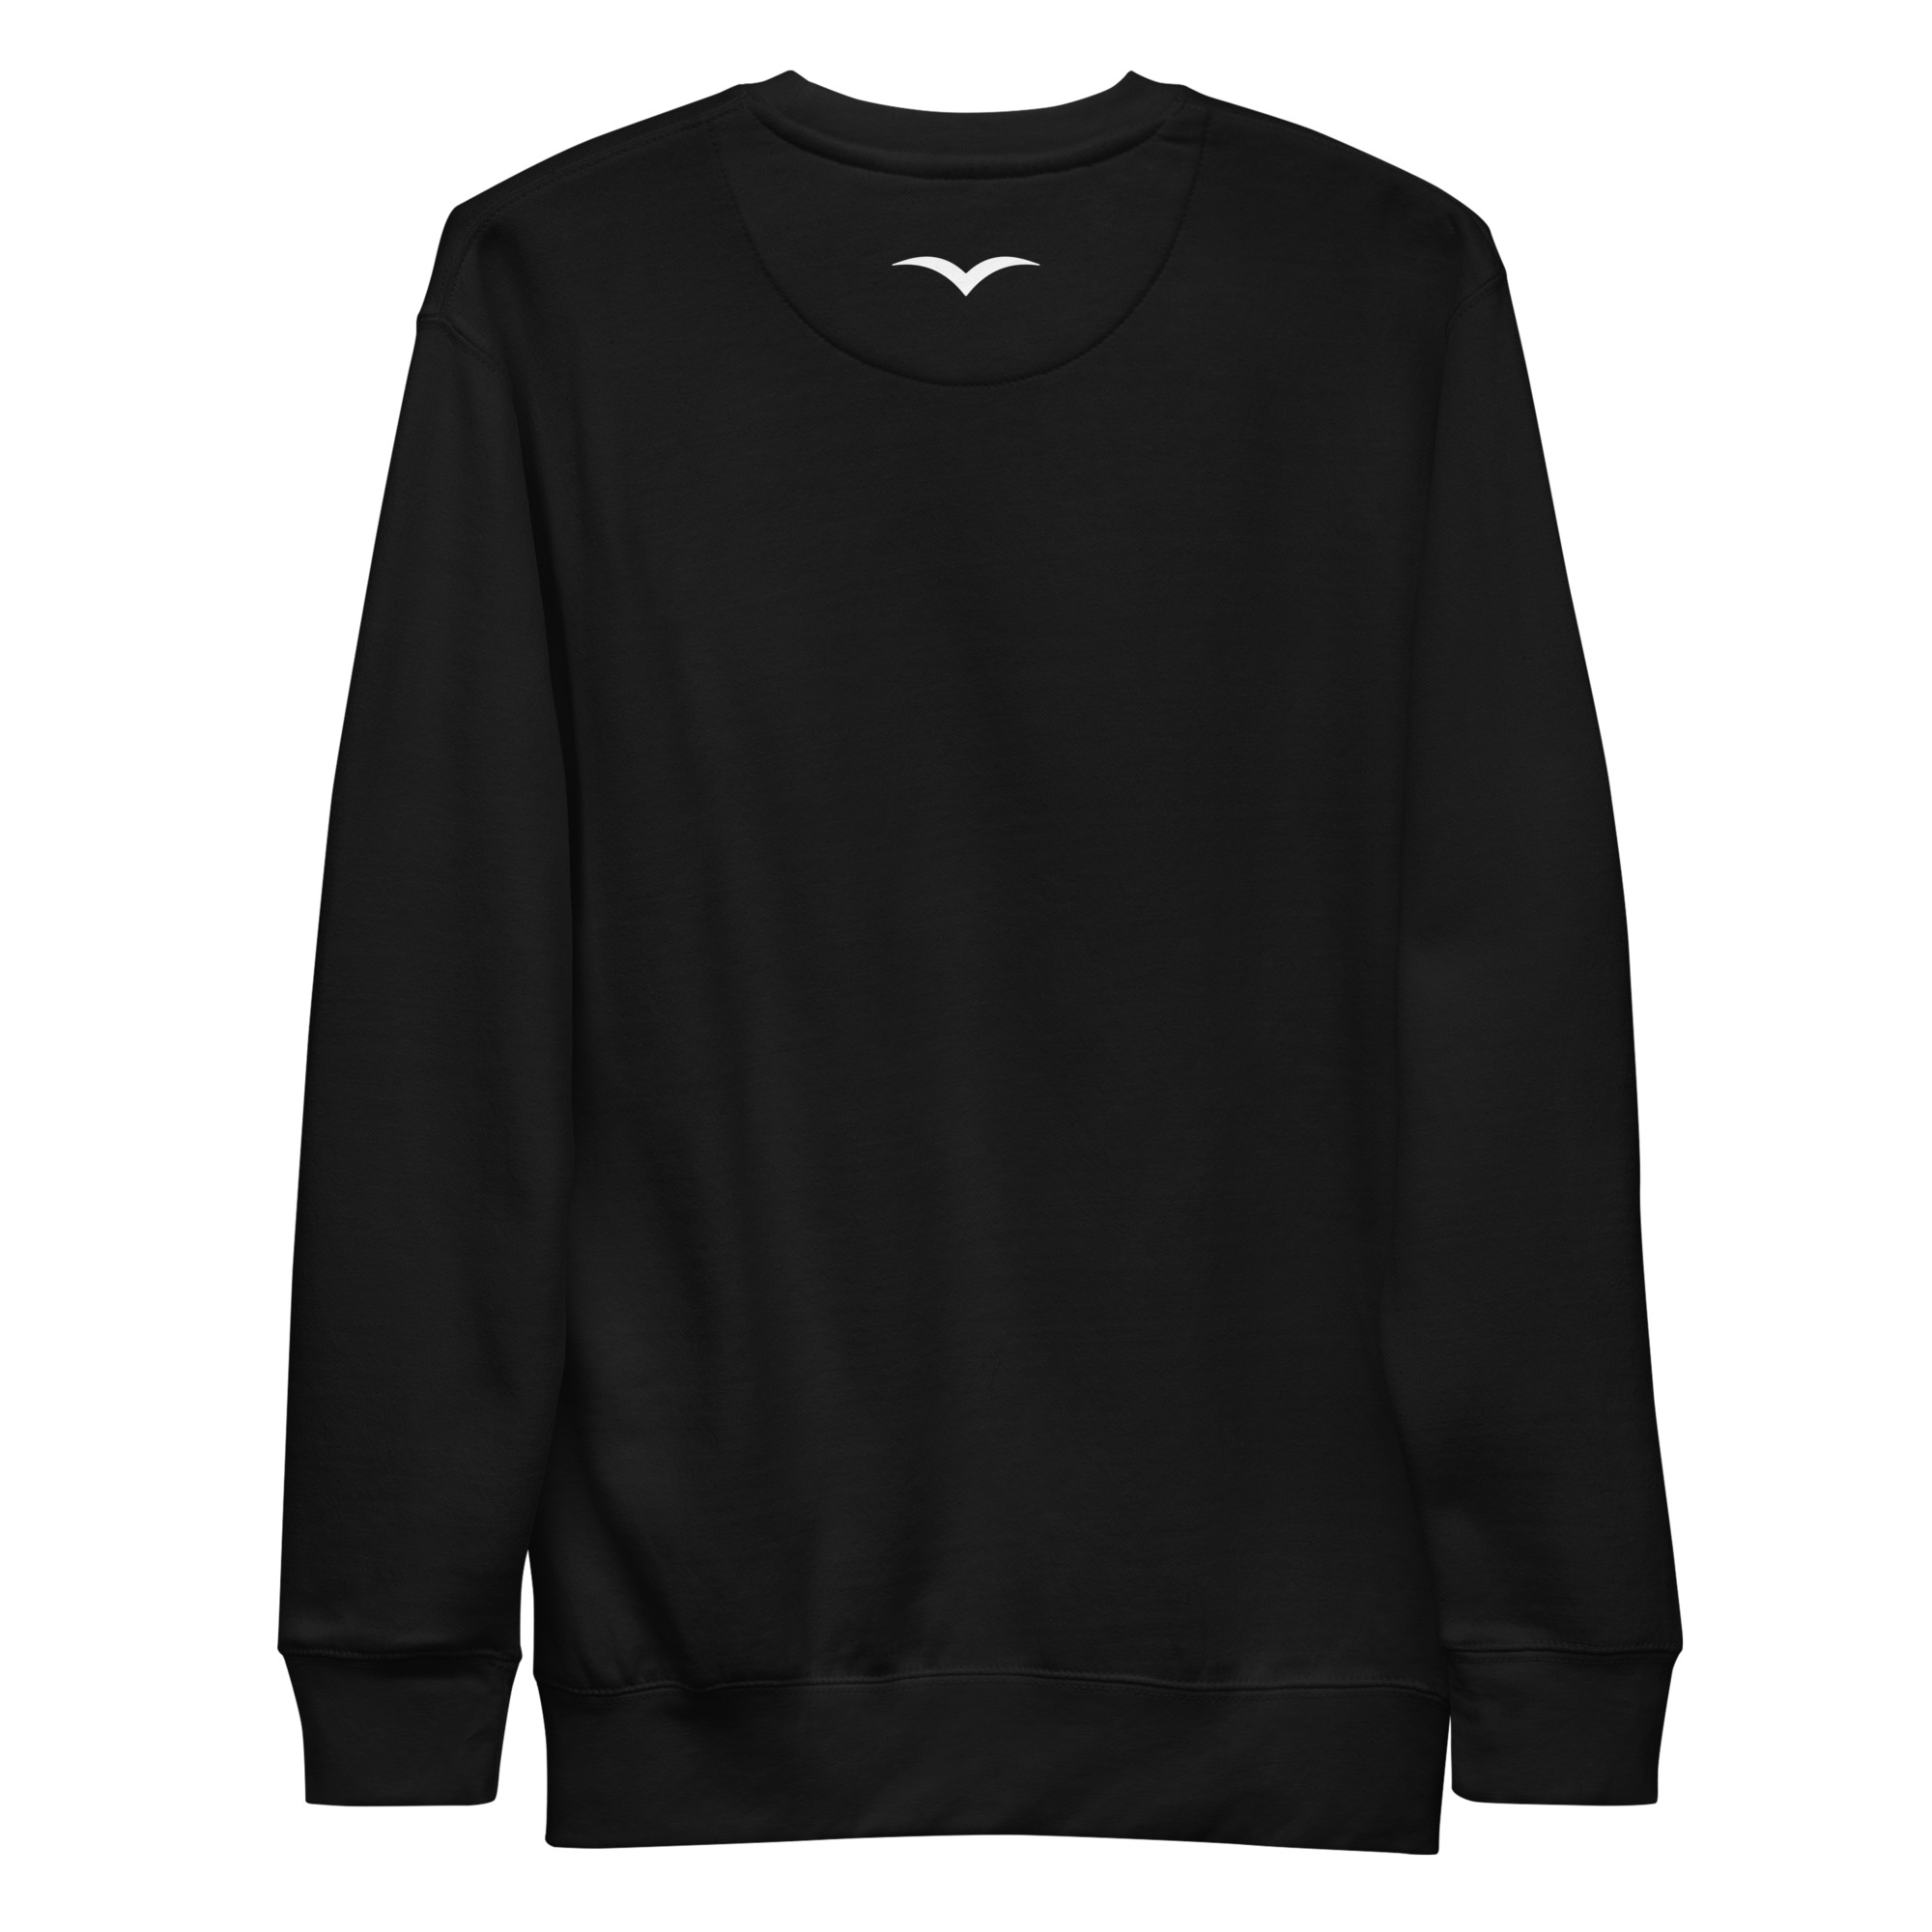 unisex-premium-sweatshirt-black-back-64136cee696f0.jpg